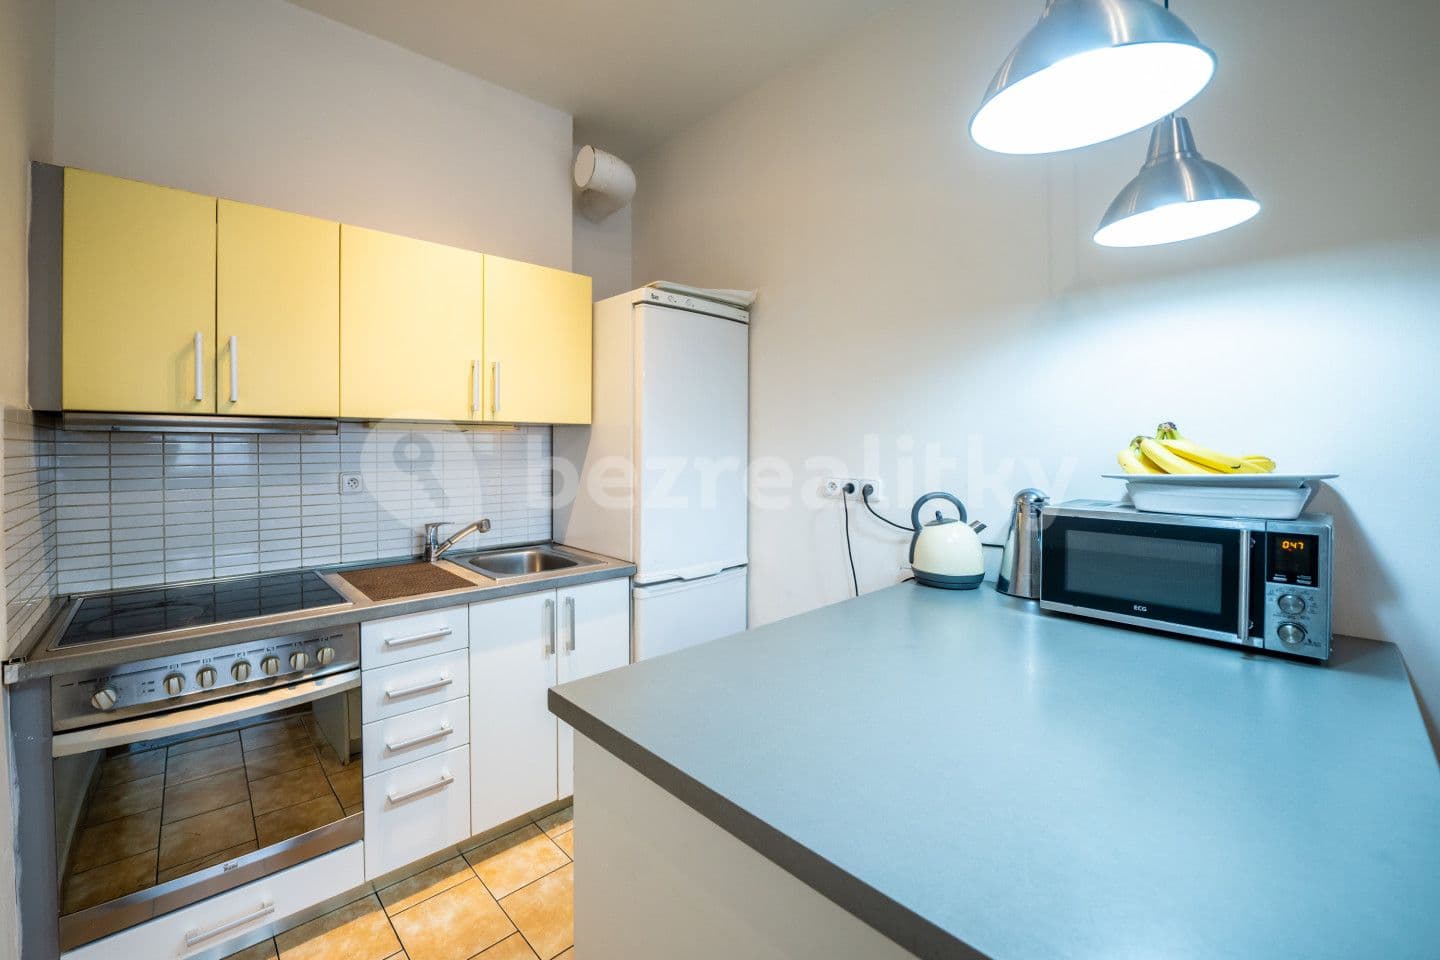 3 bedroom with open-plan kitchen flat for sale, 82 m², Silurská, Prague, Prague